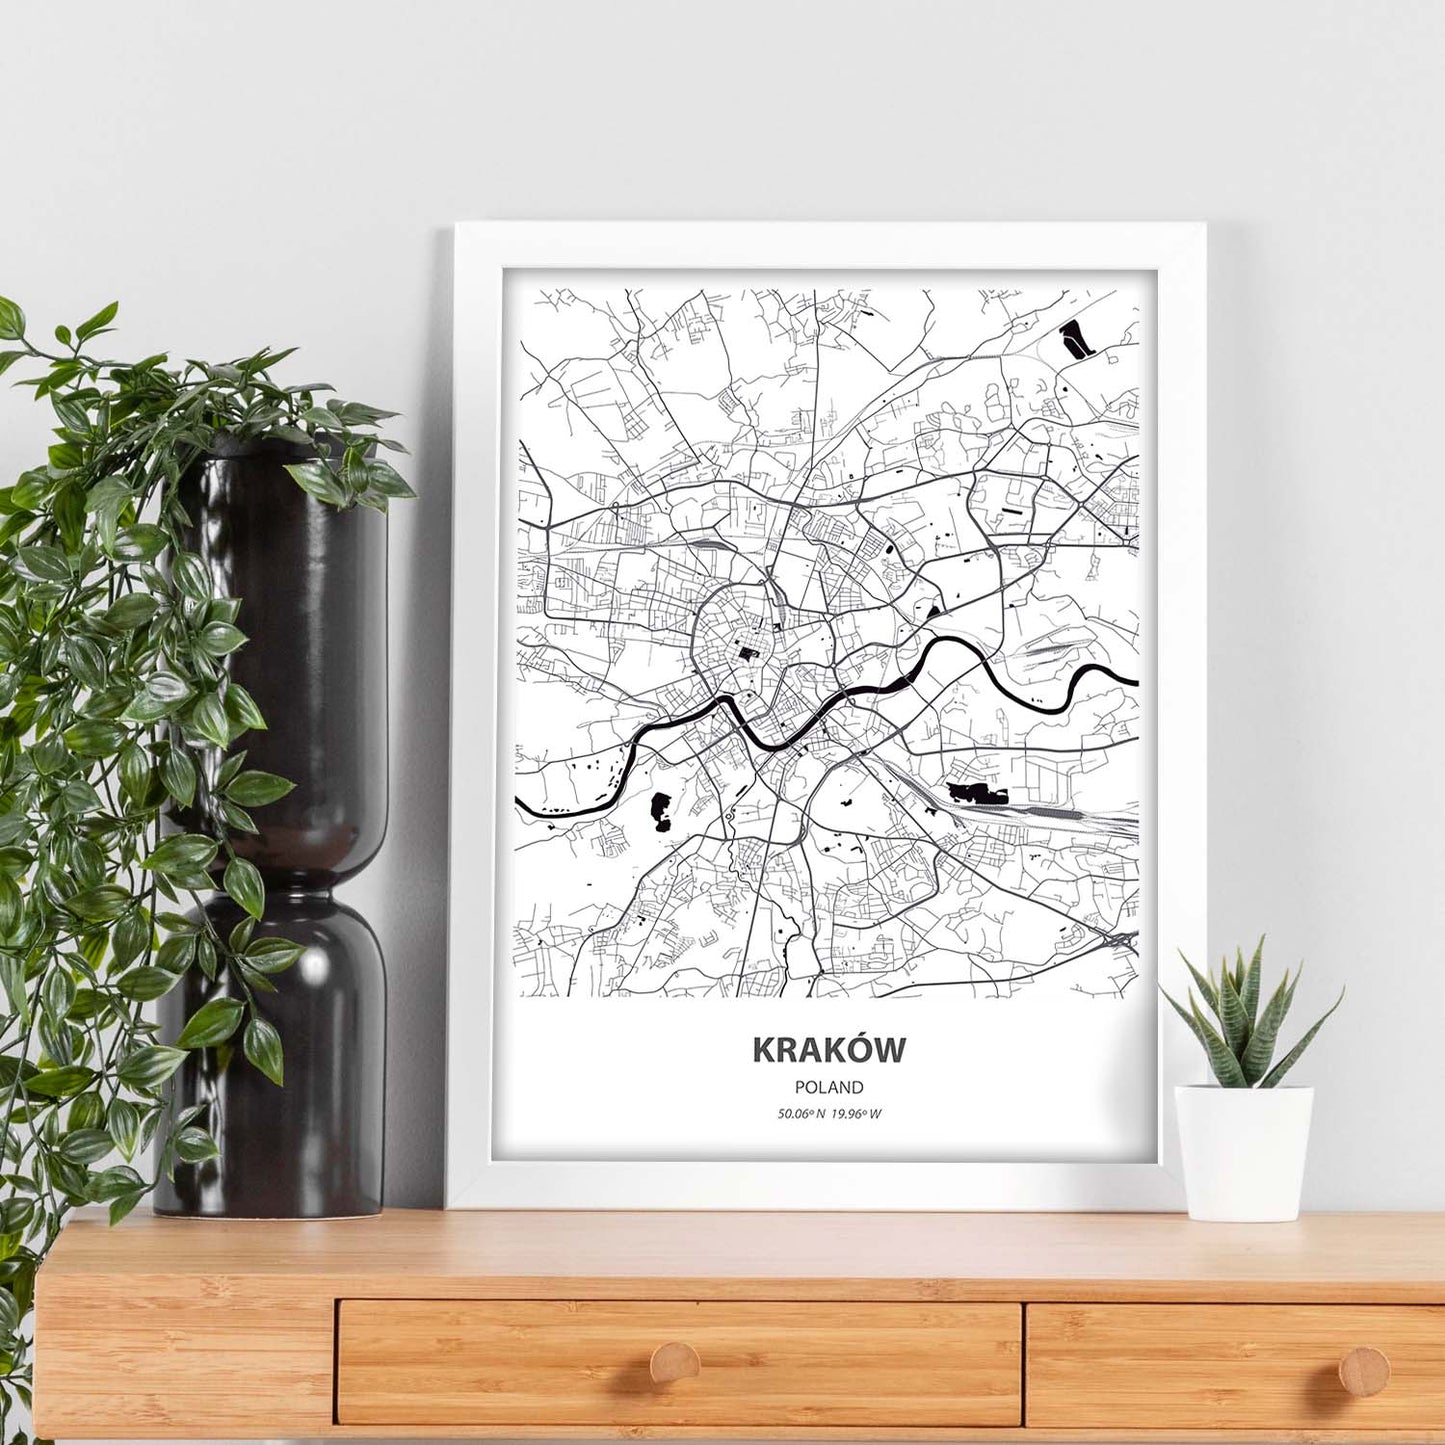 Poster con mapa de Krakow - Polonia. Láminas de ciudades de Europa con mares y ríos en color negro.-Artwork-Nacnic-Nacnic Estudio SL